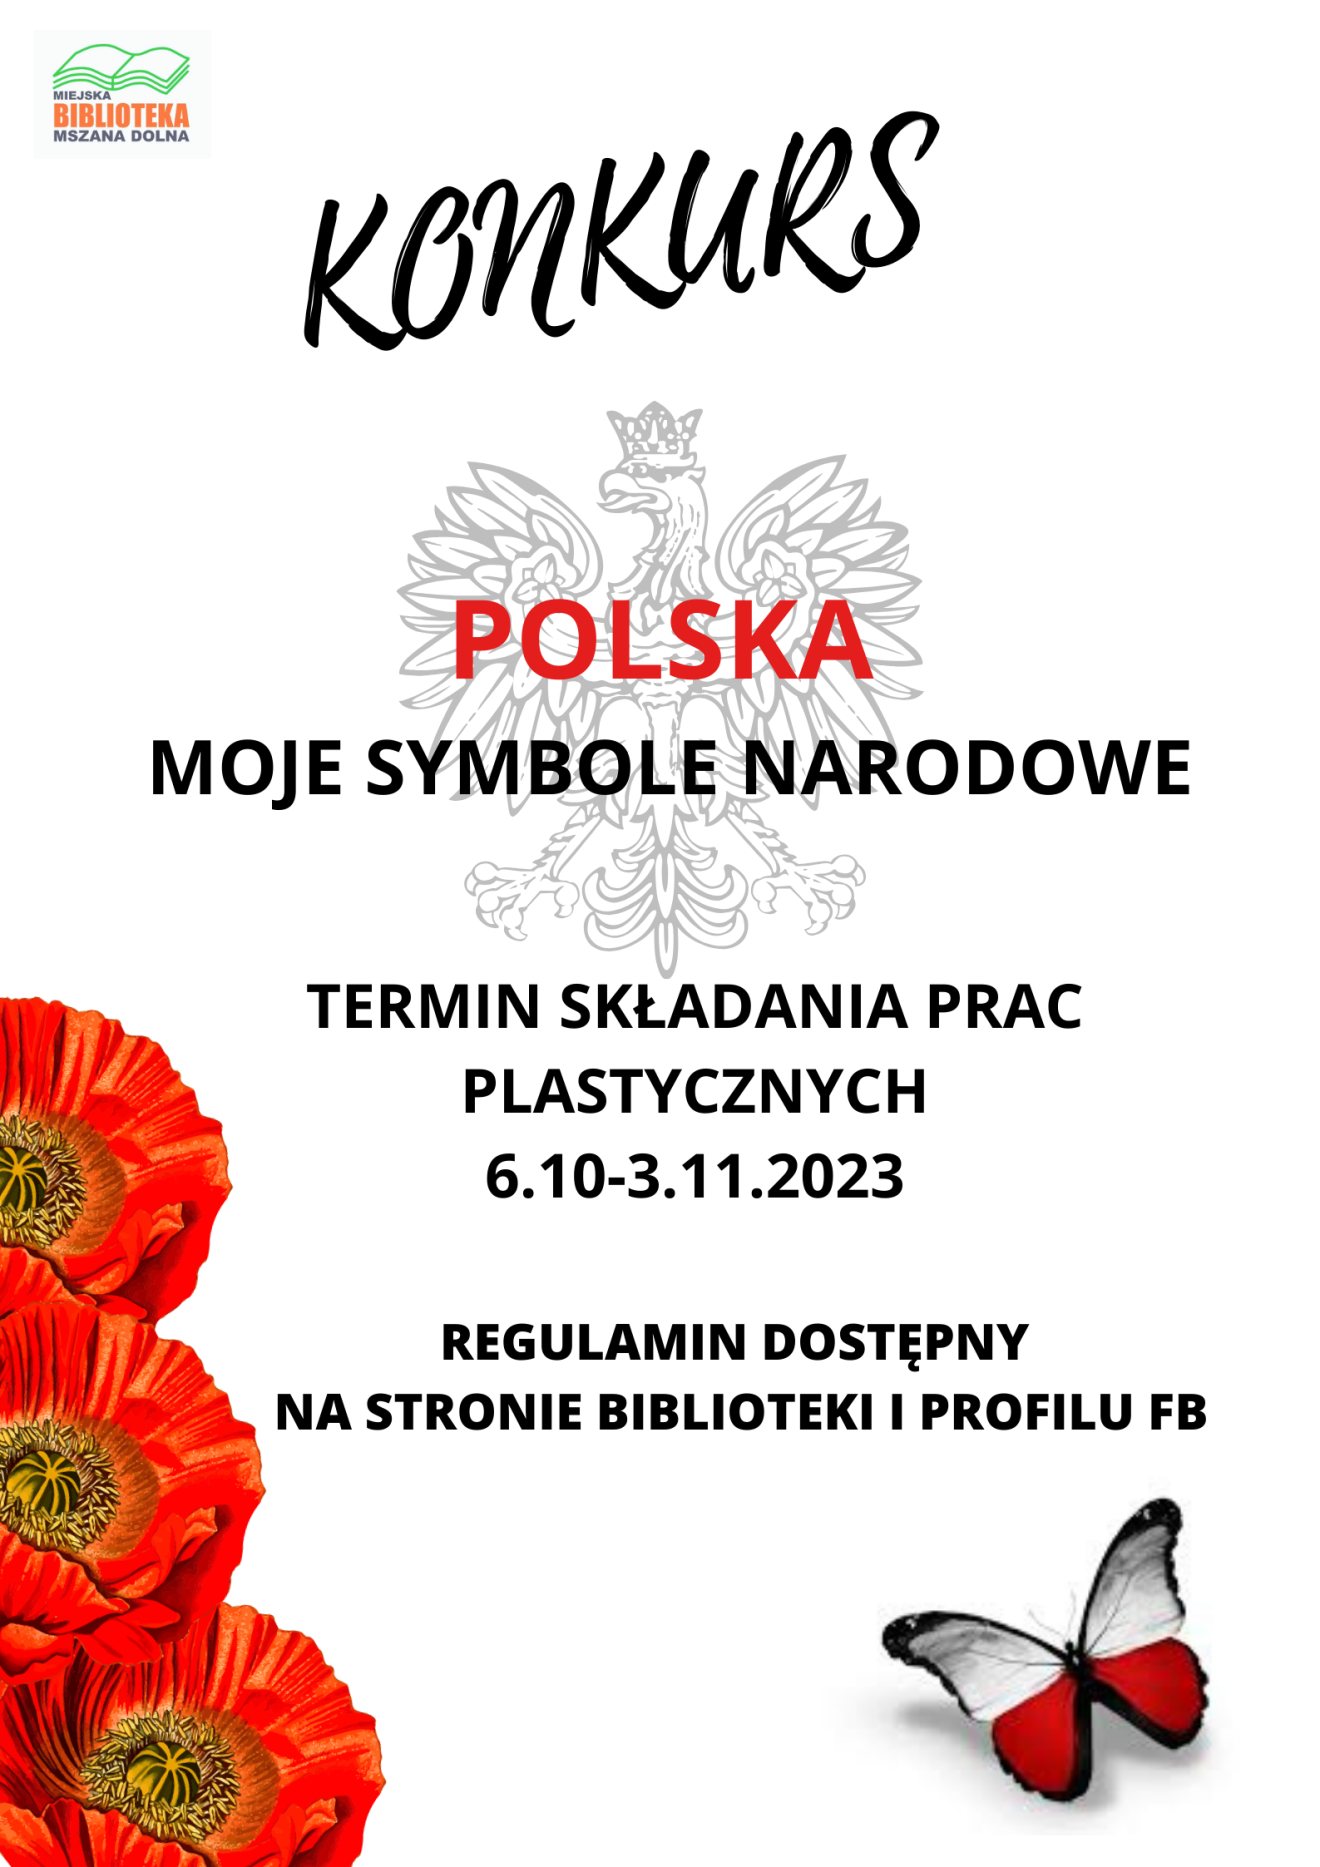 Plakat promujący konkurs, na którym znajduje się informacja, czerwone kwiaty, orzeł oraz motyl z biało-czerwonymi skrzydłami.